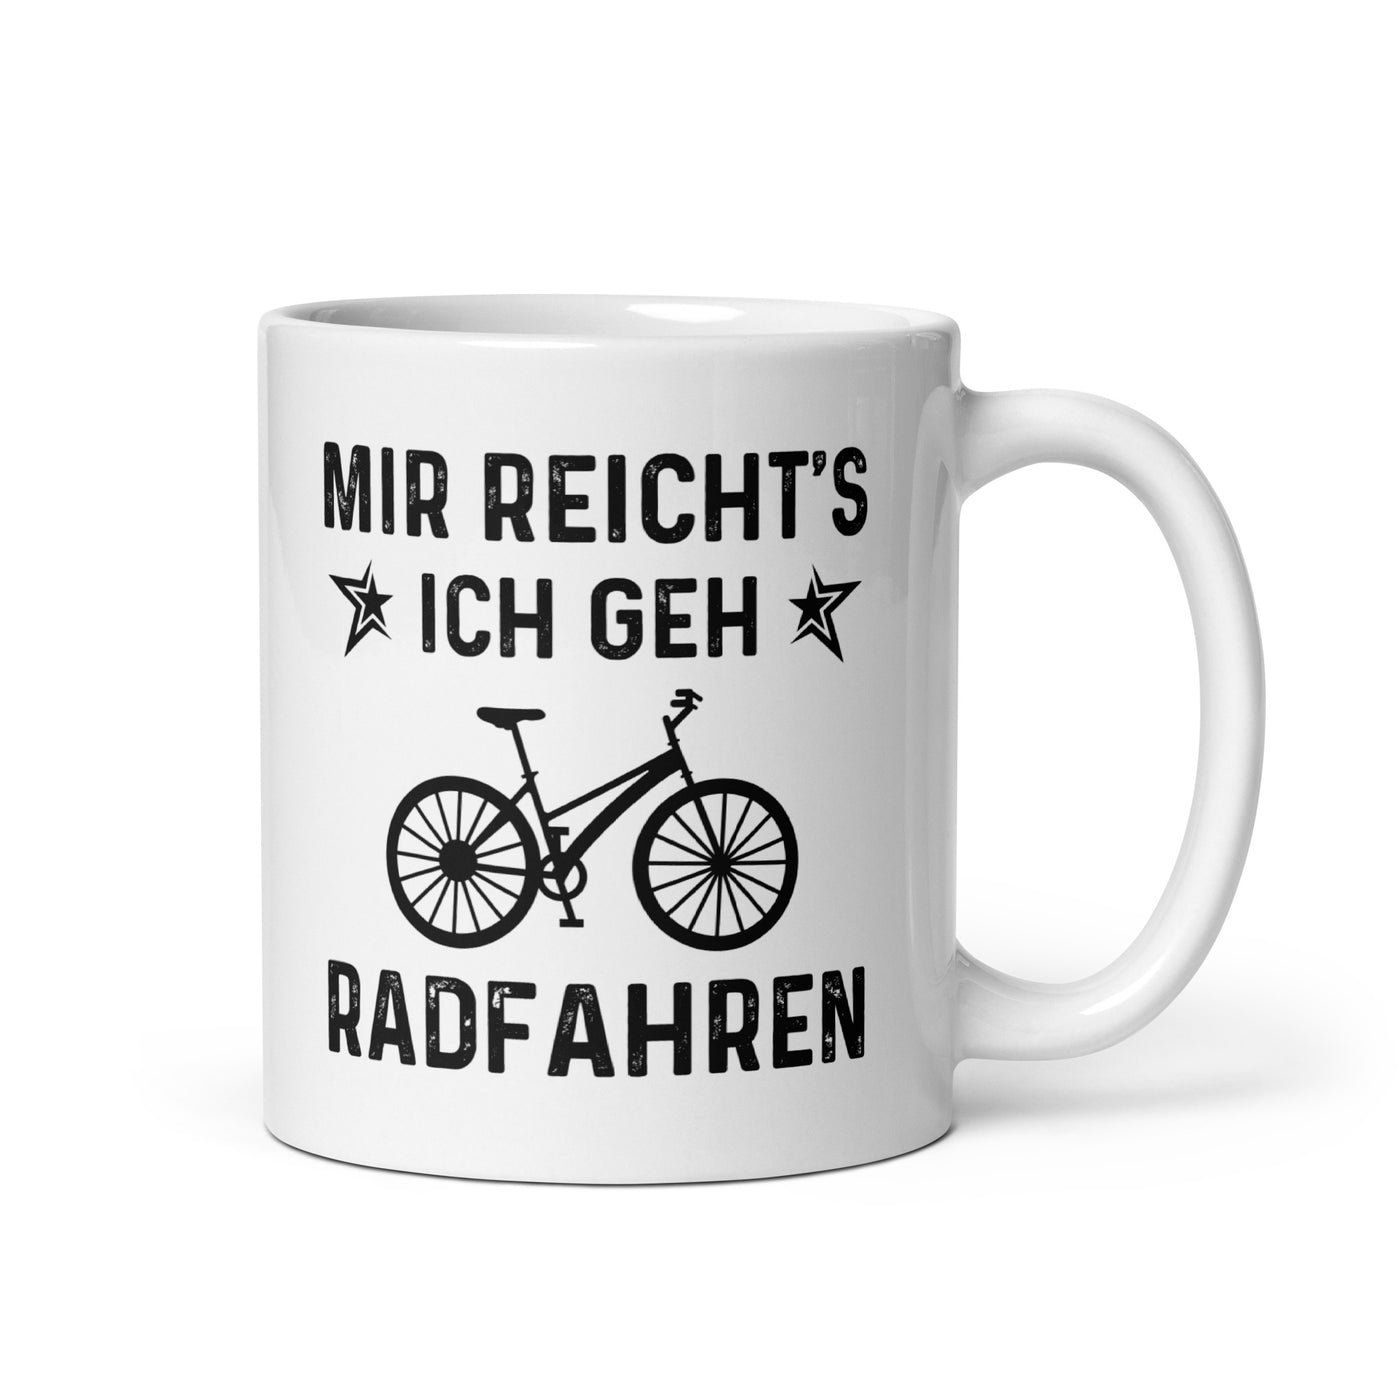 Mir Reicht'S Ich Gen Radfahren - Tasse fahrrad